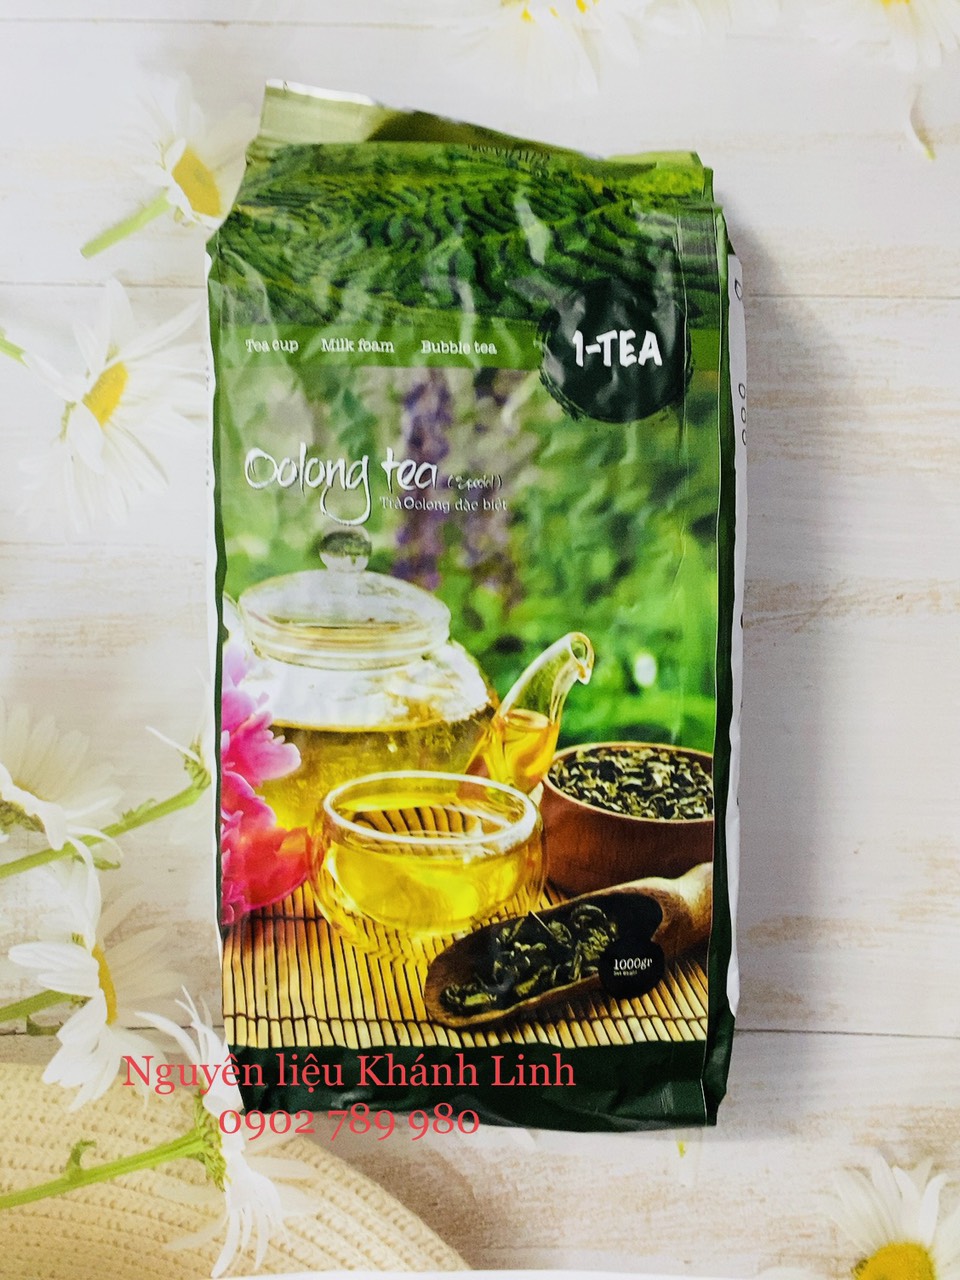  Trà Olong Đặc Biệt 1-Tea 1kg